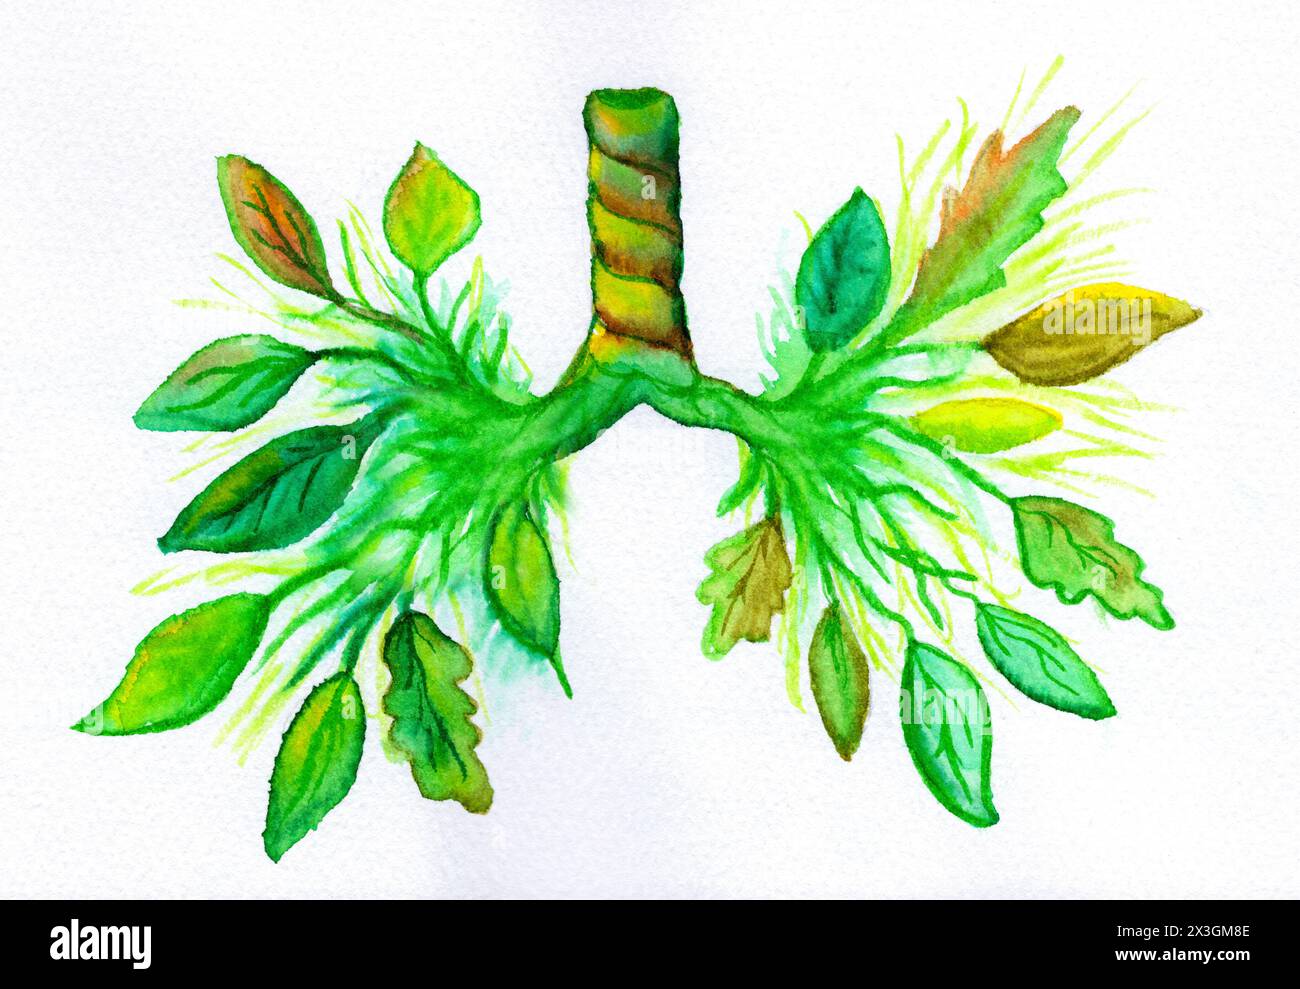 Konzeptuelle Darstellung der botanisch thematisierten Lunge, symbolisiert die Atemgesundheit und die Verbindung zwischen Natur, sauberer Luft und Lungenkrankheiten. Stockfoto